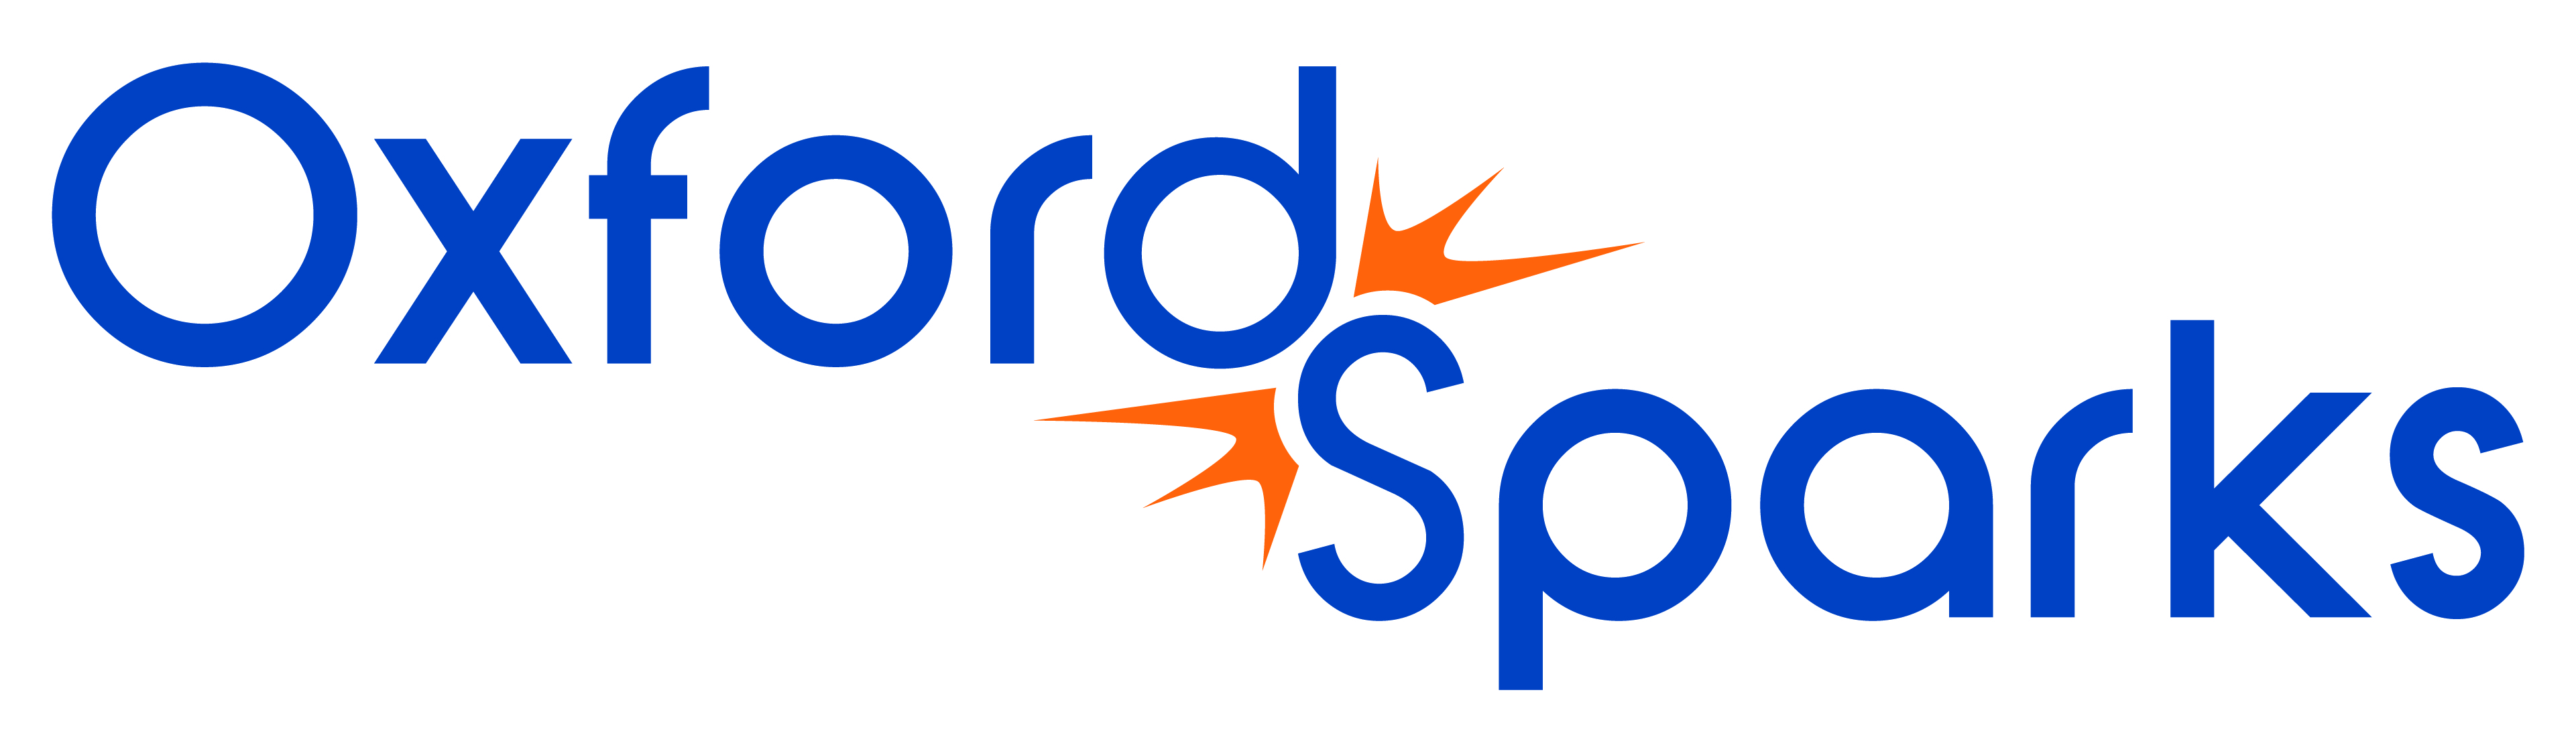 ou-oxfordsparks-brand-logo-full.jpg